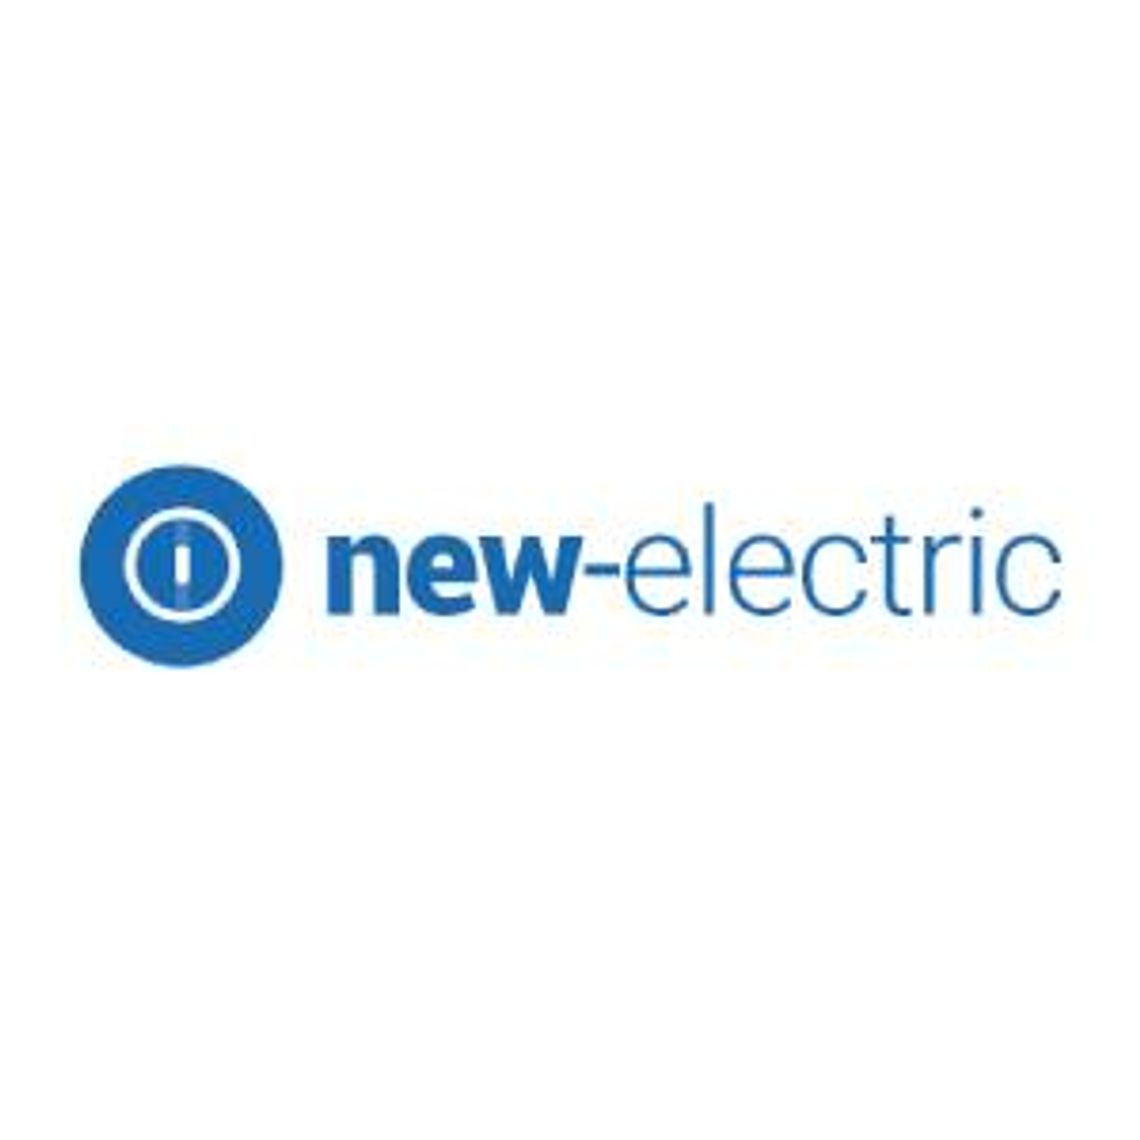 Internetowy sklep elektryczny - New-electric